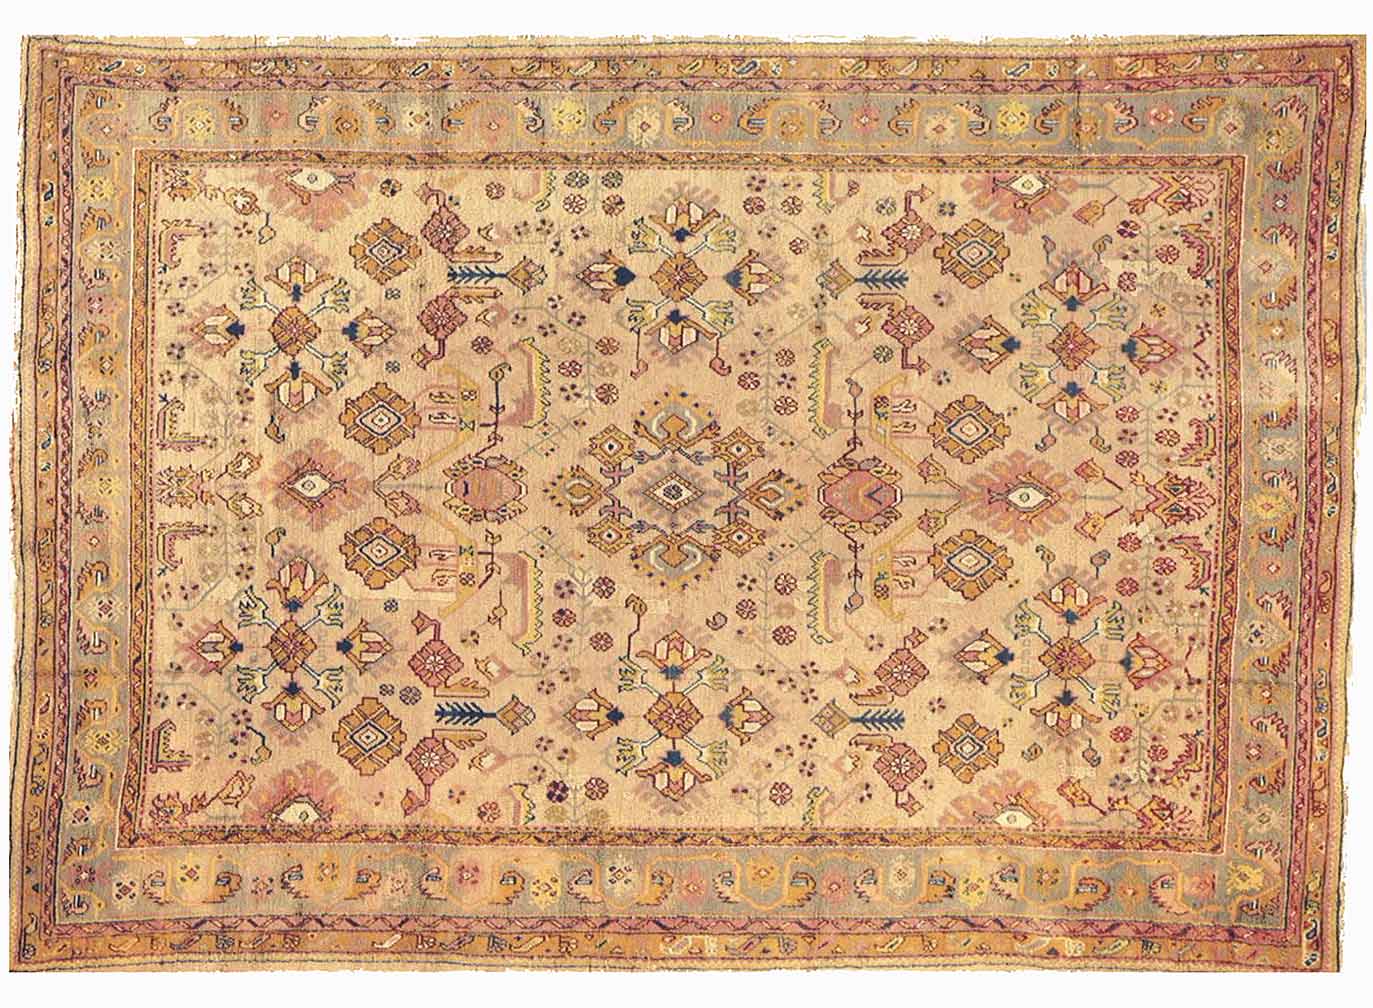 Antique oushak Carpet - # 54464